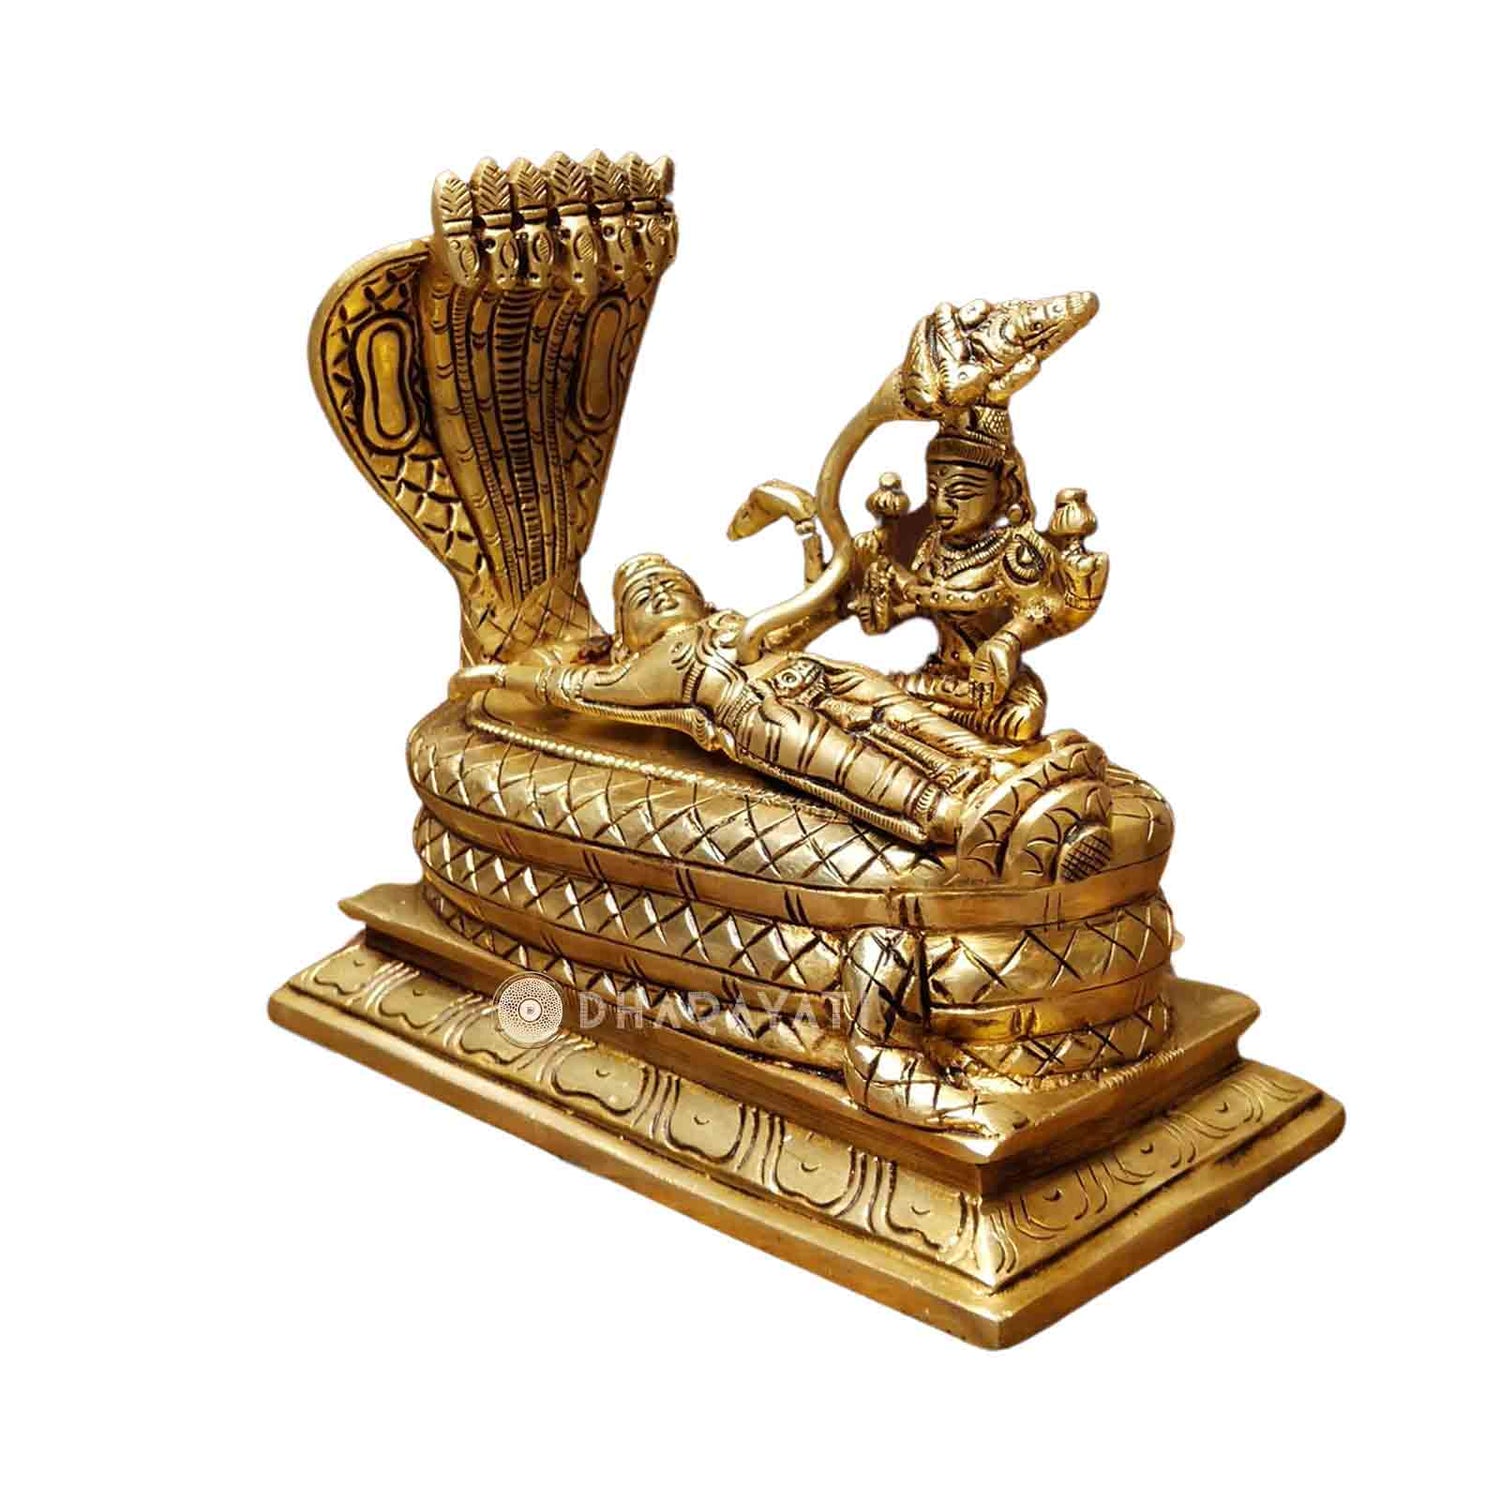 B H A R A T H A A T Brass Sleeping Lord Vishnu Lord Shri Nararayan Idol  Statue Murti Showpiece (6 x 3 x 3 inches) Decorative Showpiece - 7.62 cm